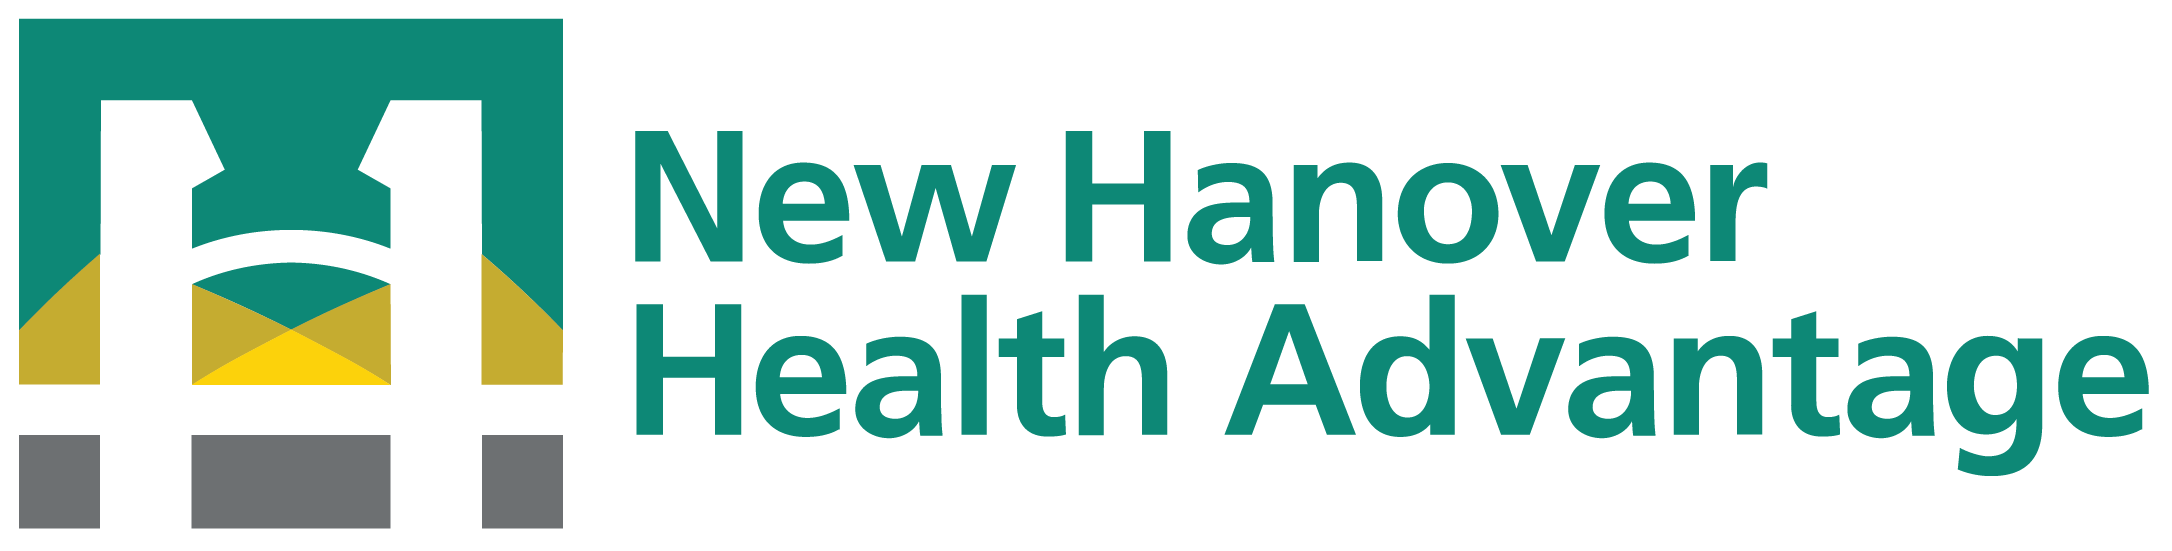 New Hanover Health Advantage